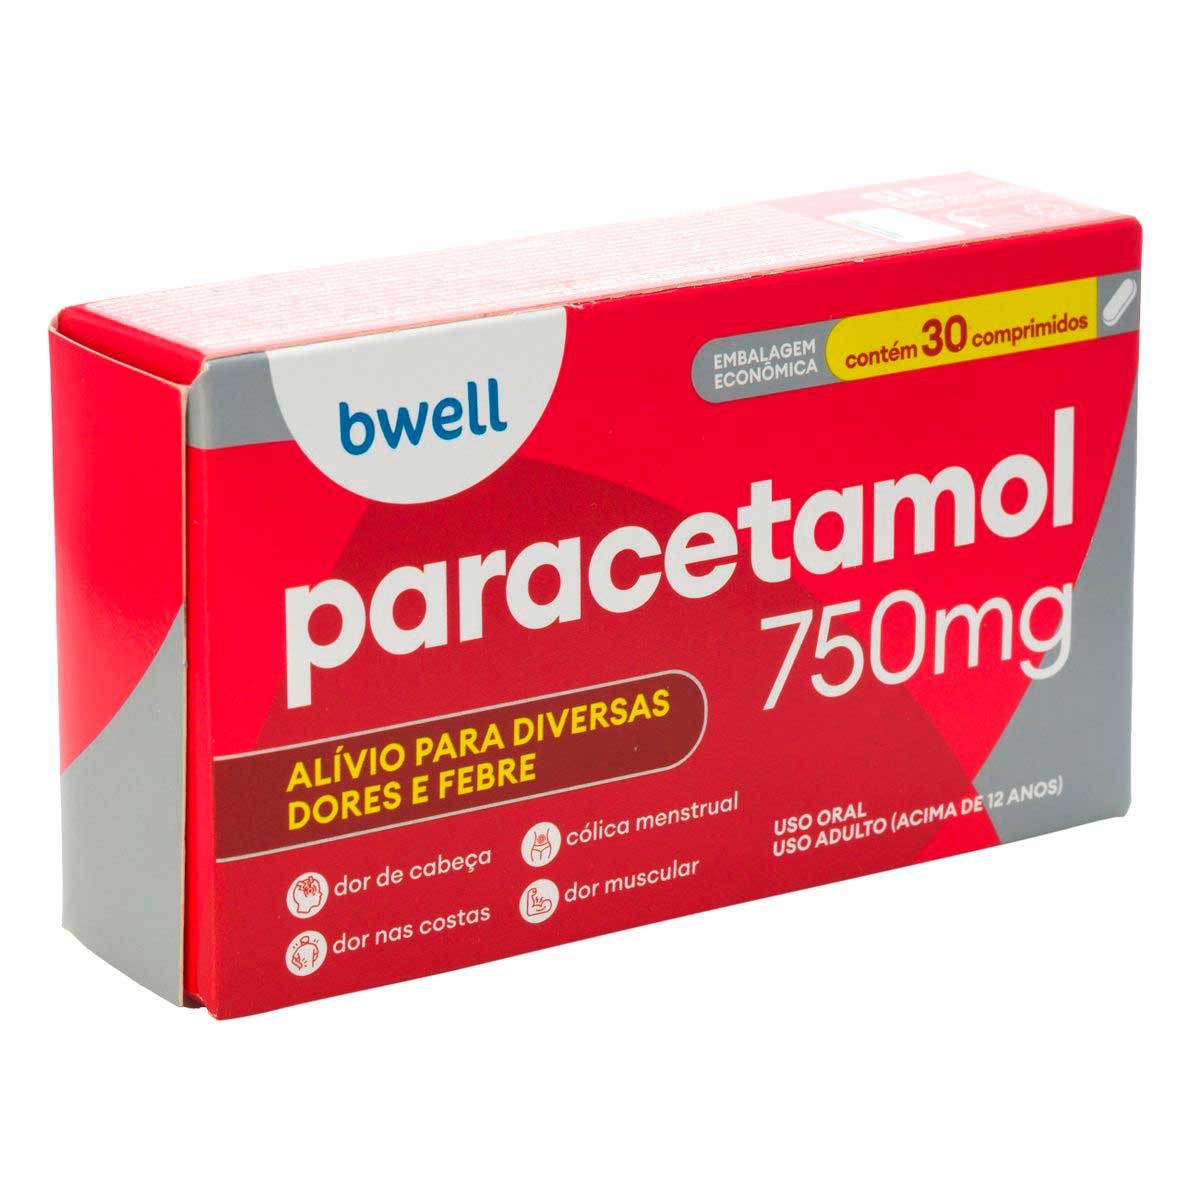 bwell Paracetamol 750mg 30 comprimidos